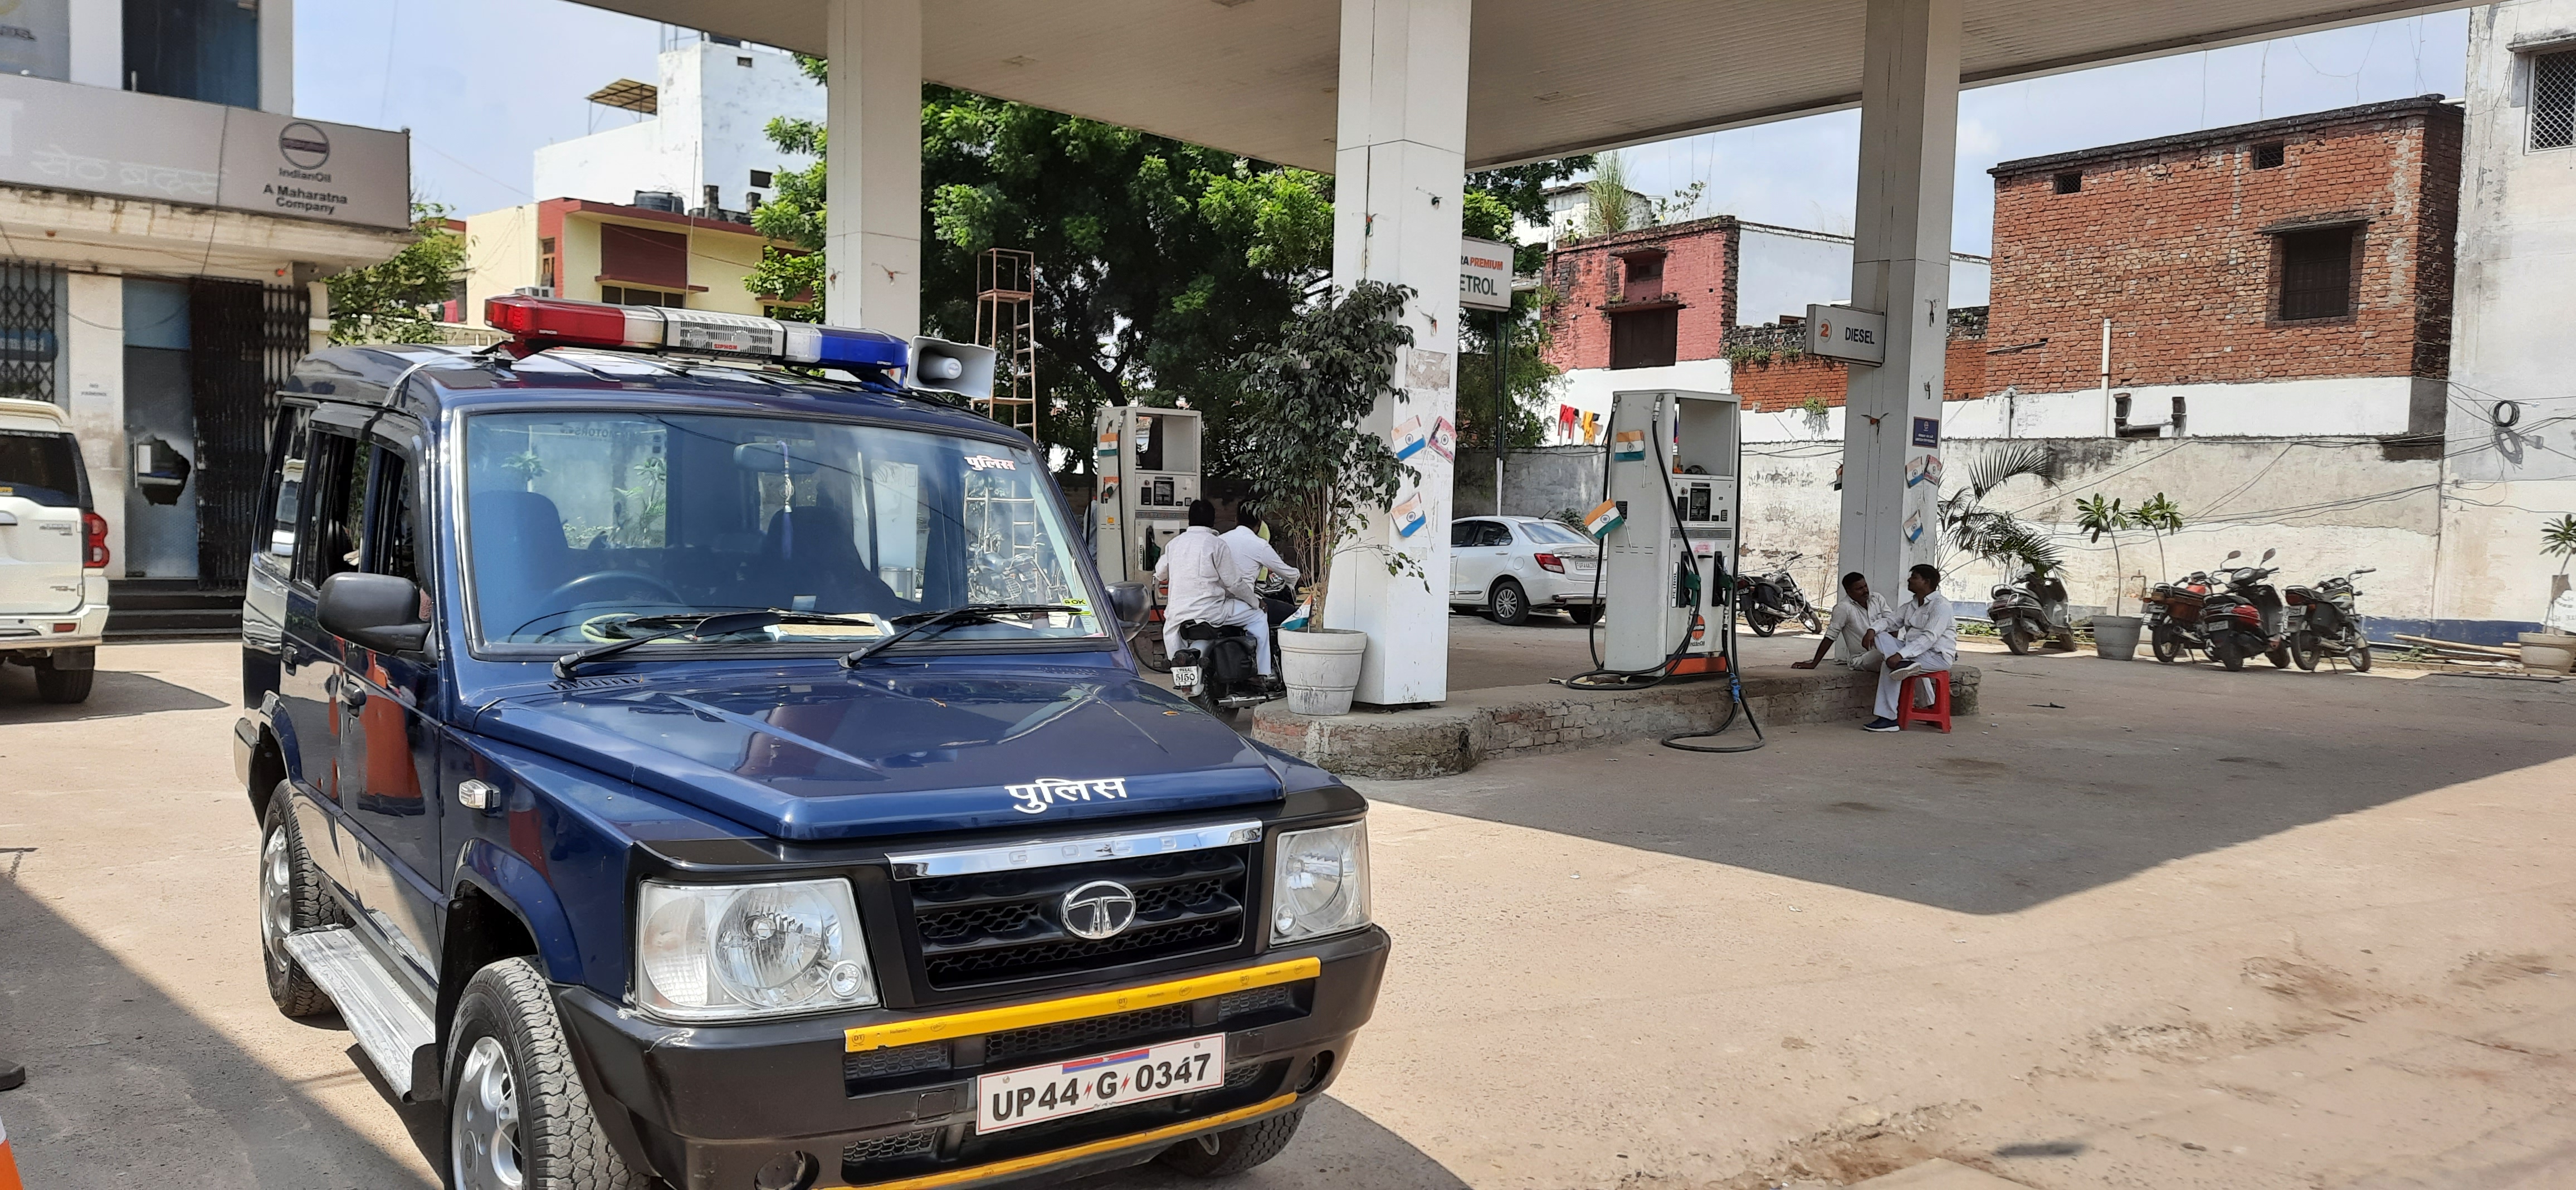 सुलतानपुर में बस स्टेशन स्थित अनूप संडा का पेट्रोल पंप